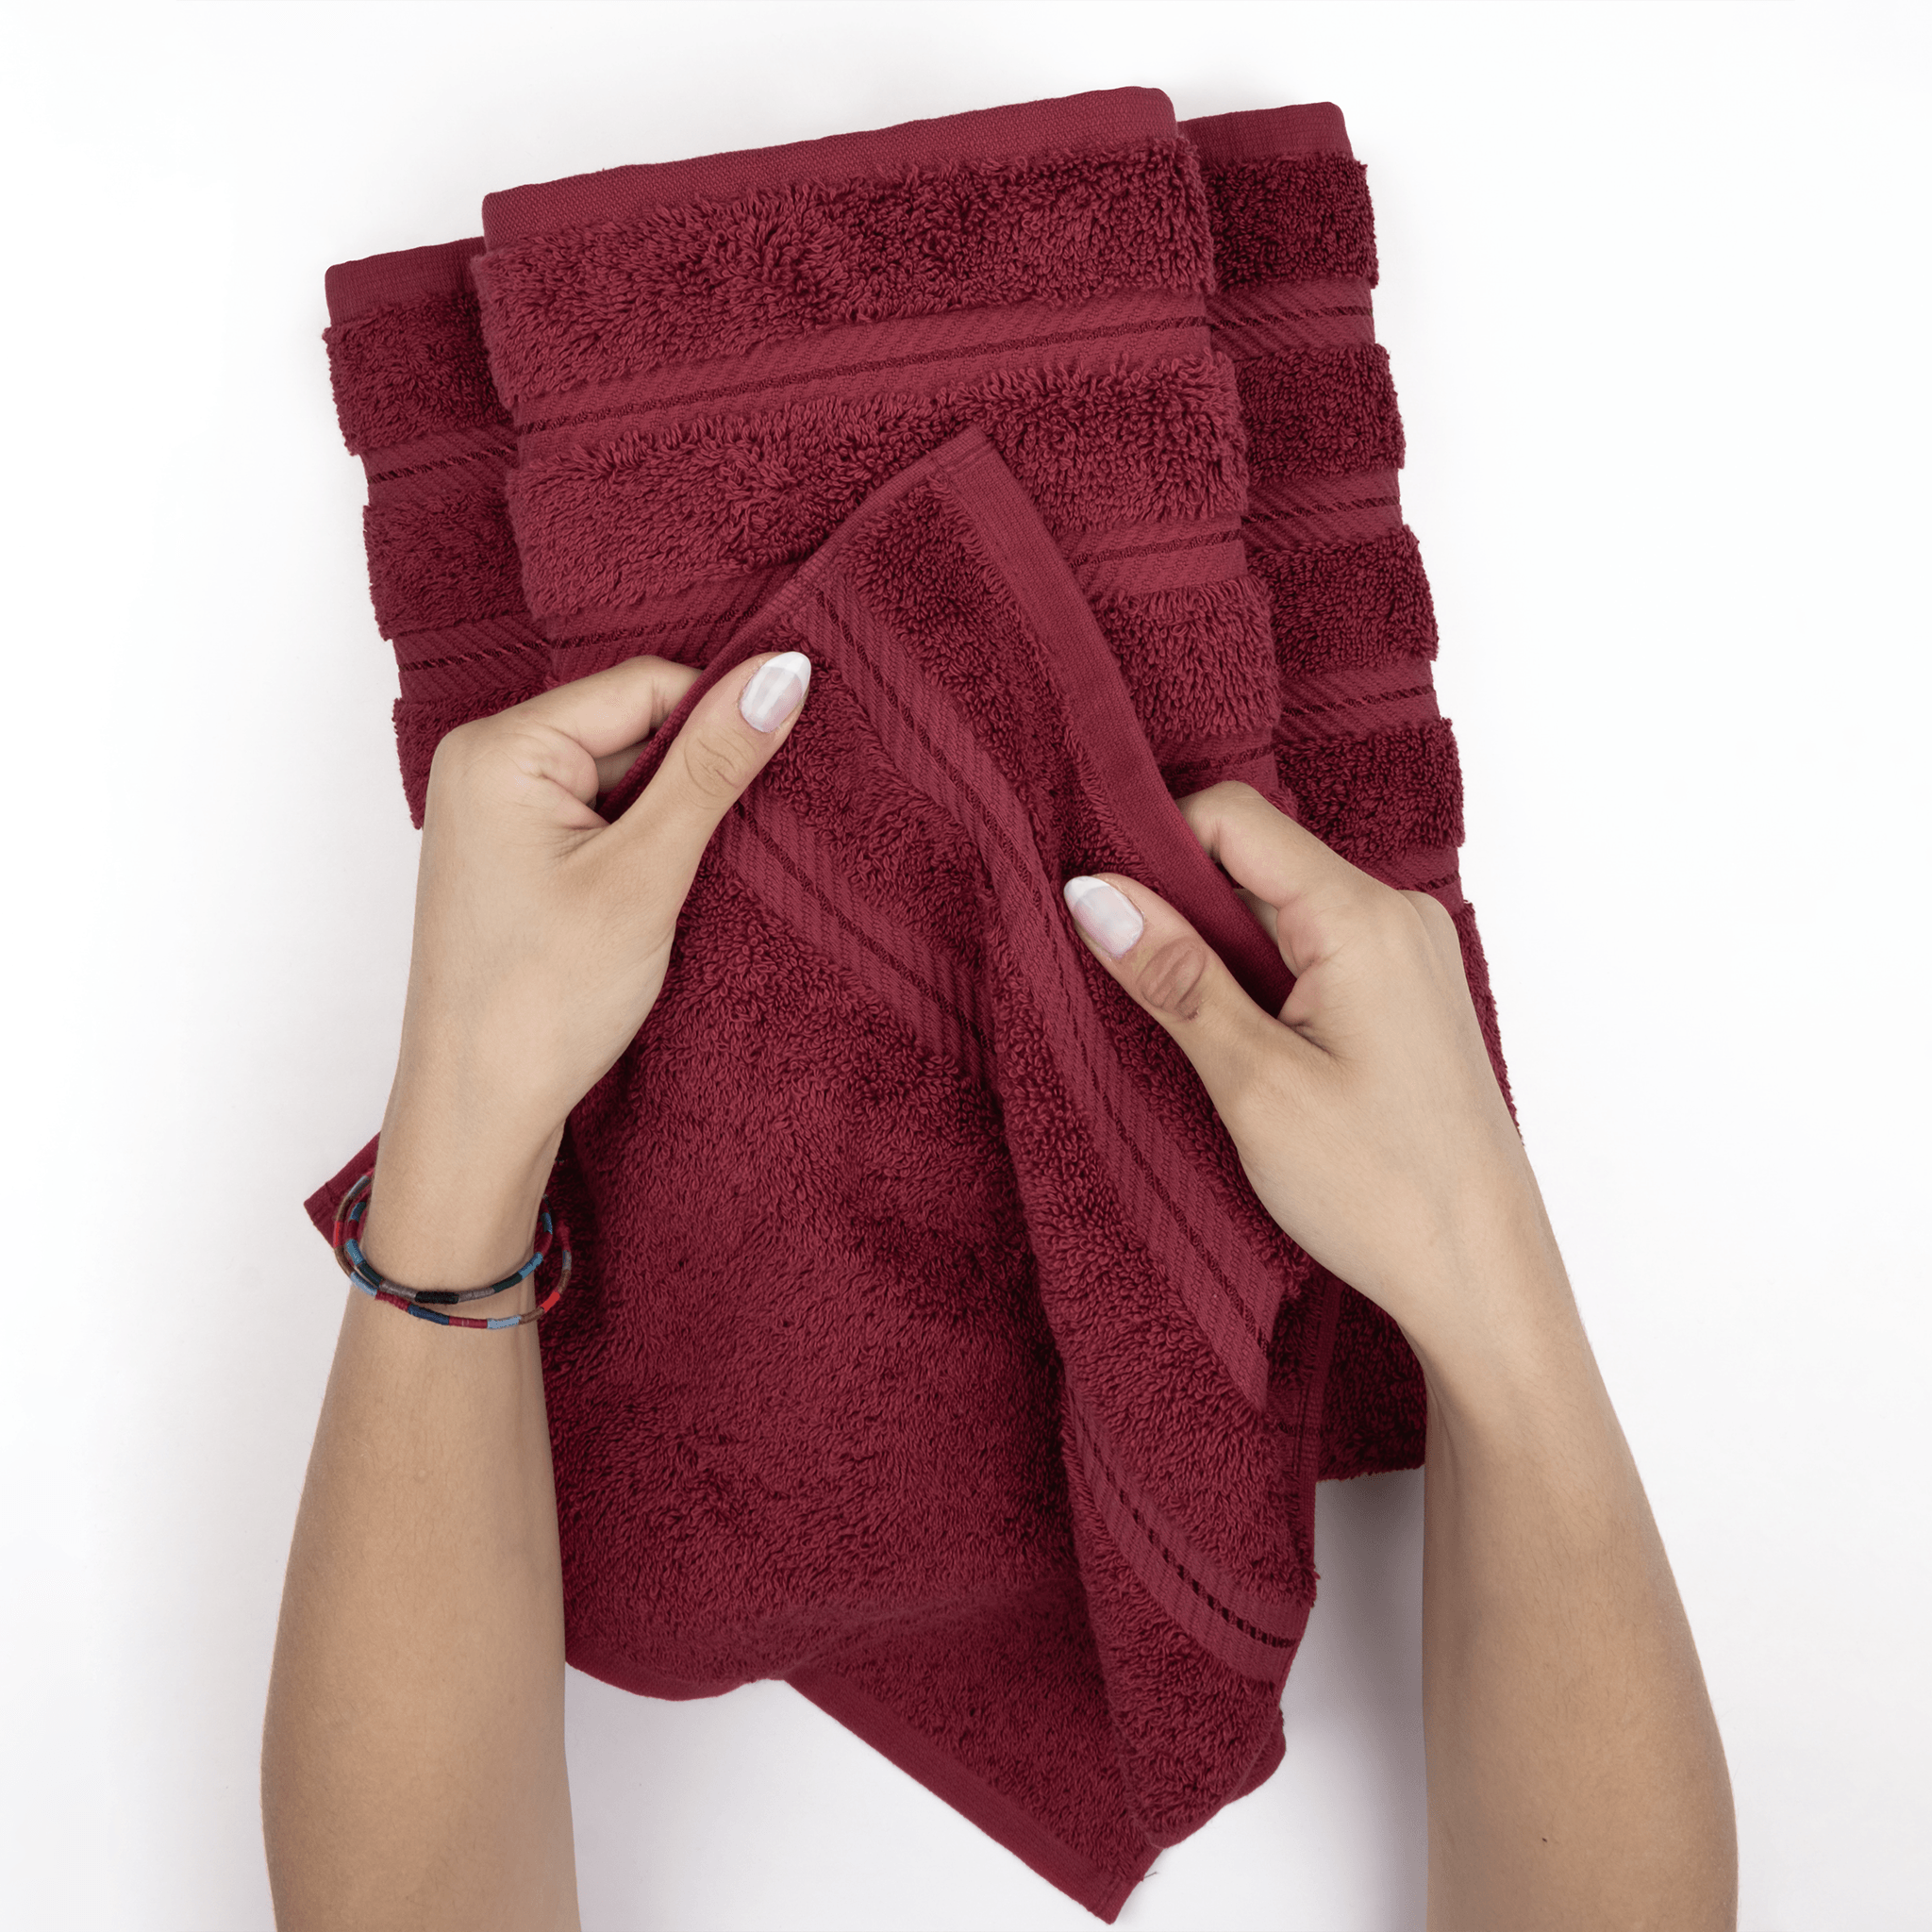 American Soft Linen - 6 Piece Turkish Cotton Bath Towel Set - Bordeaux-Red - 5